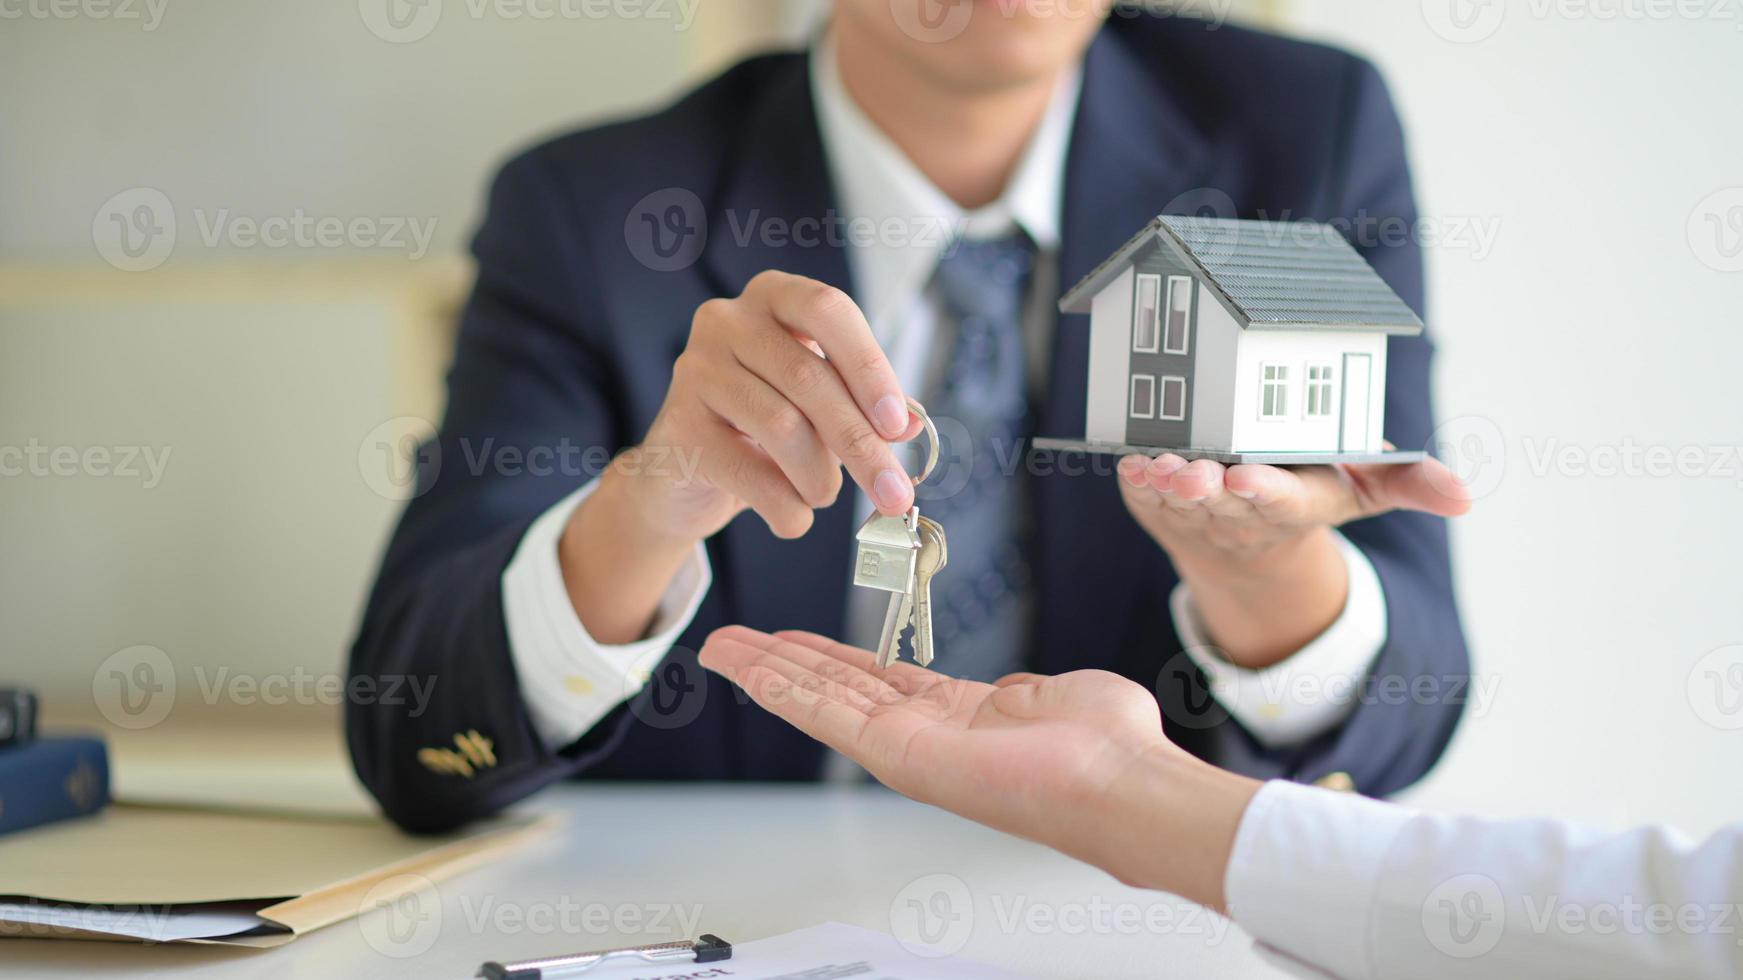 il broker di vendita della casa tiene le chiavi e la casa modello viene data ai clienti, concetto immobiliare. foto